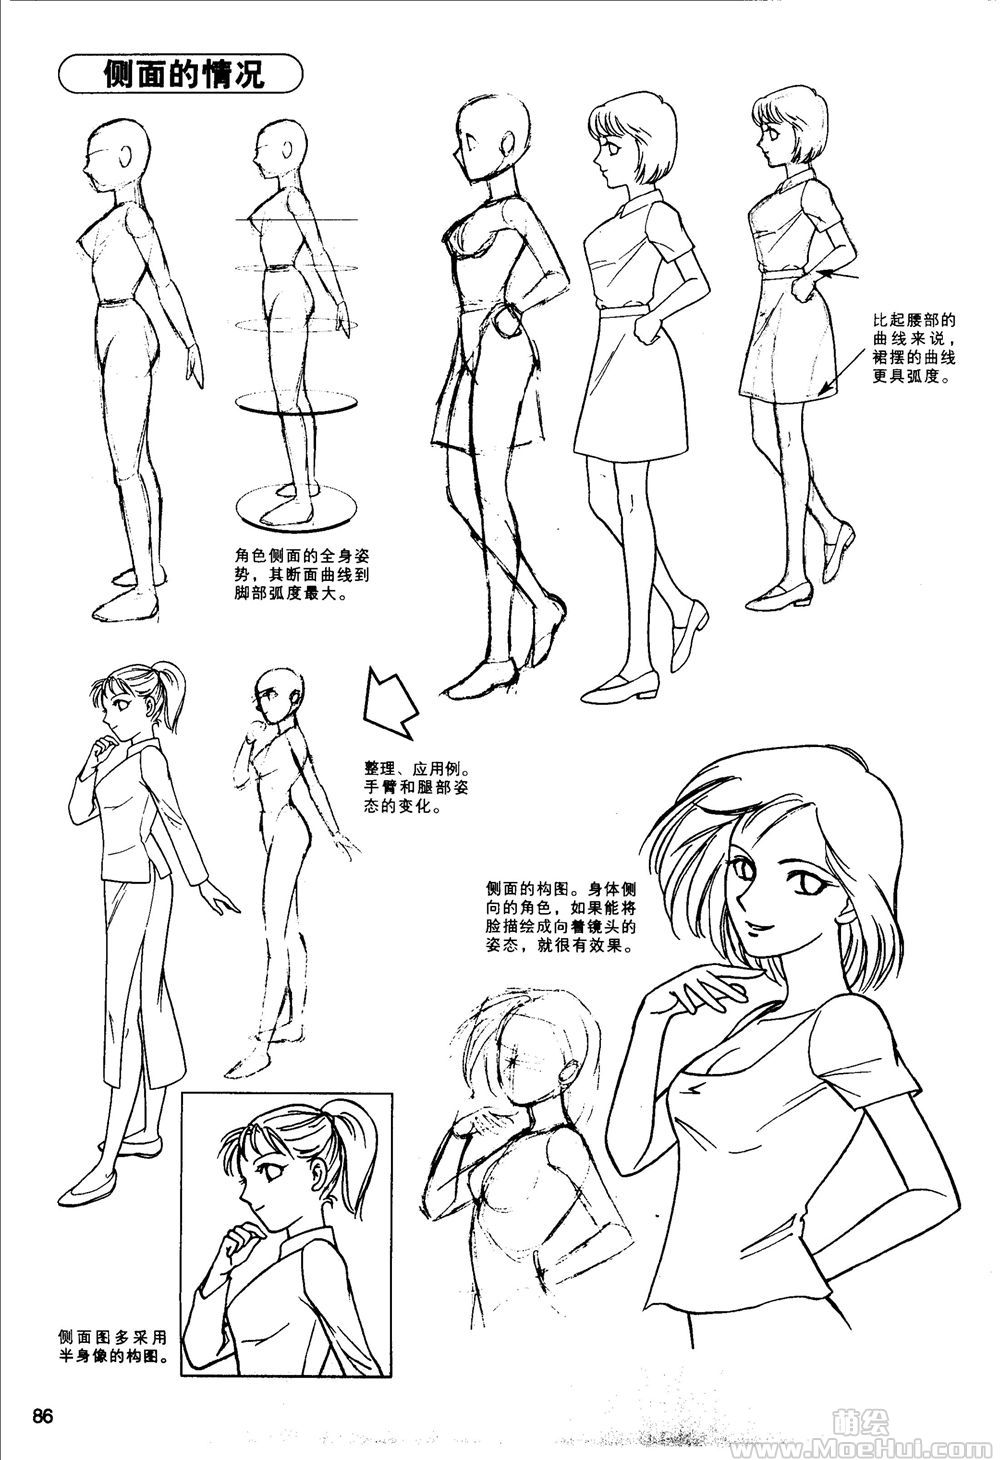 [漫画教程]最新卡通漫画技法4 美少女造型篇[131P] | 萌绘